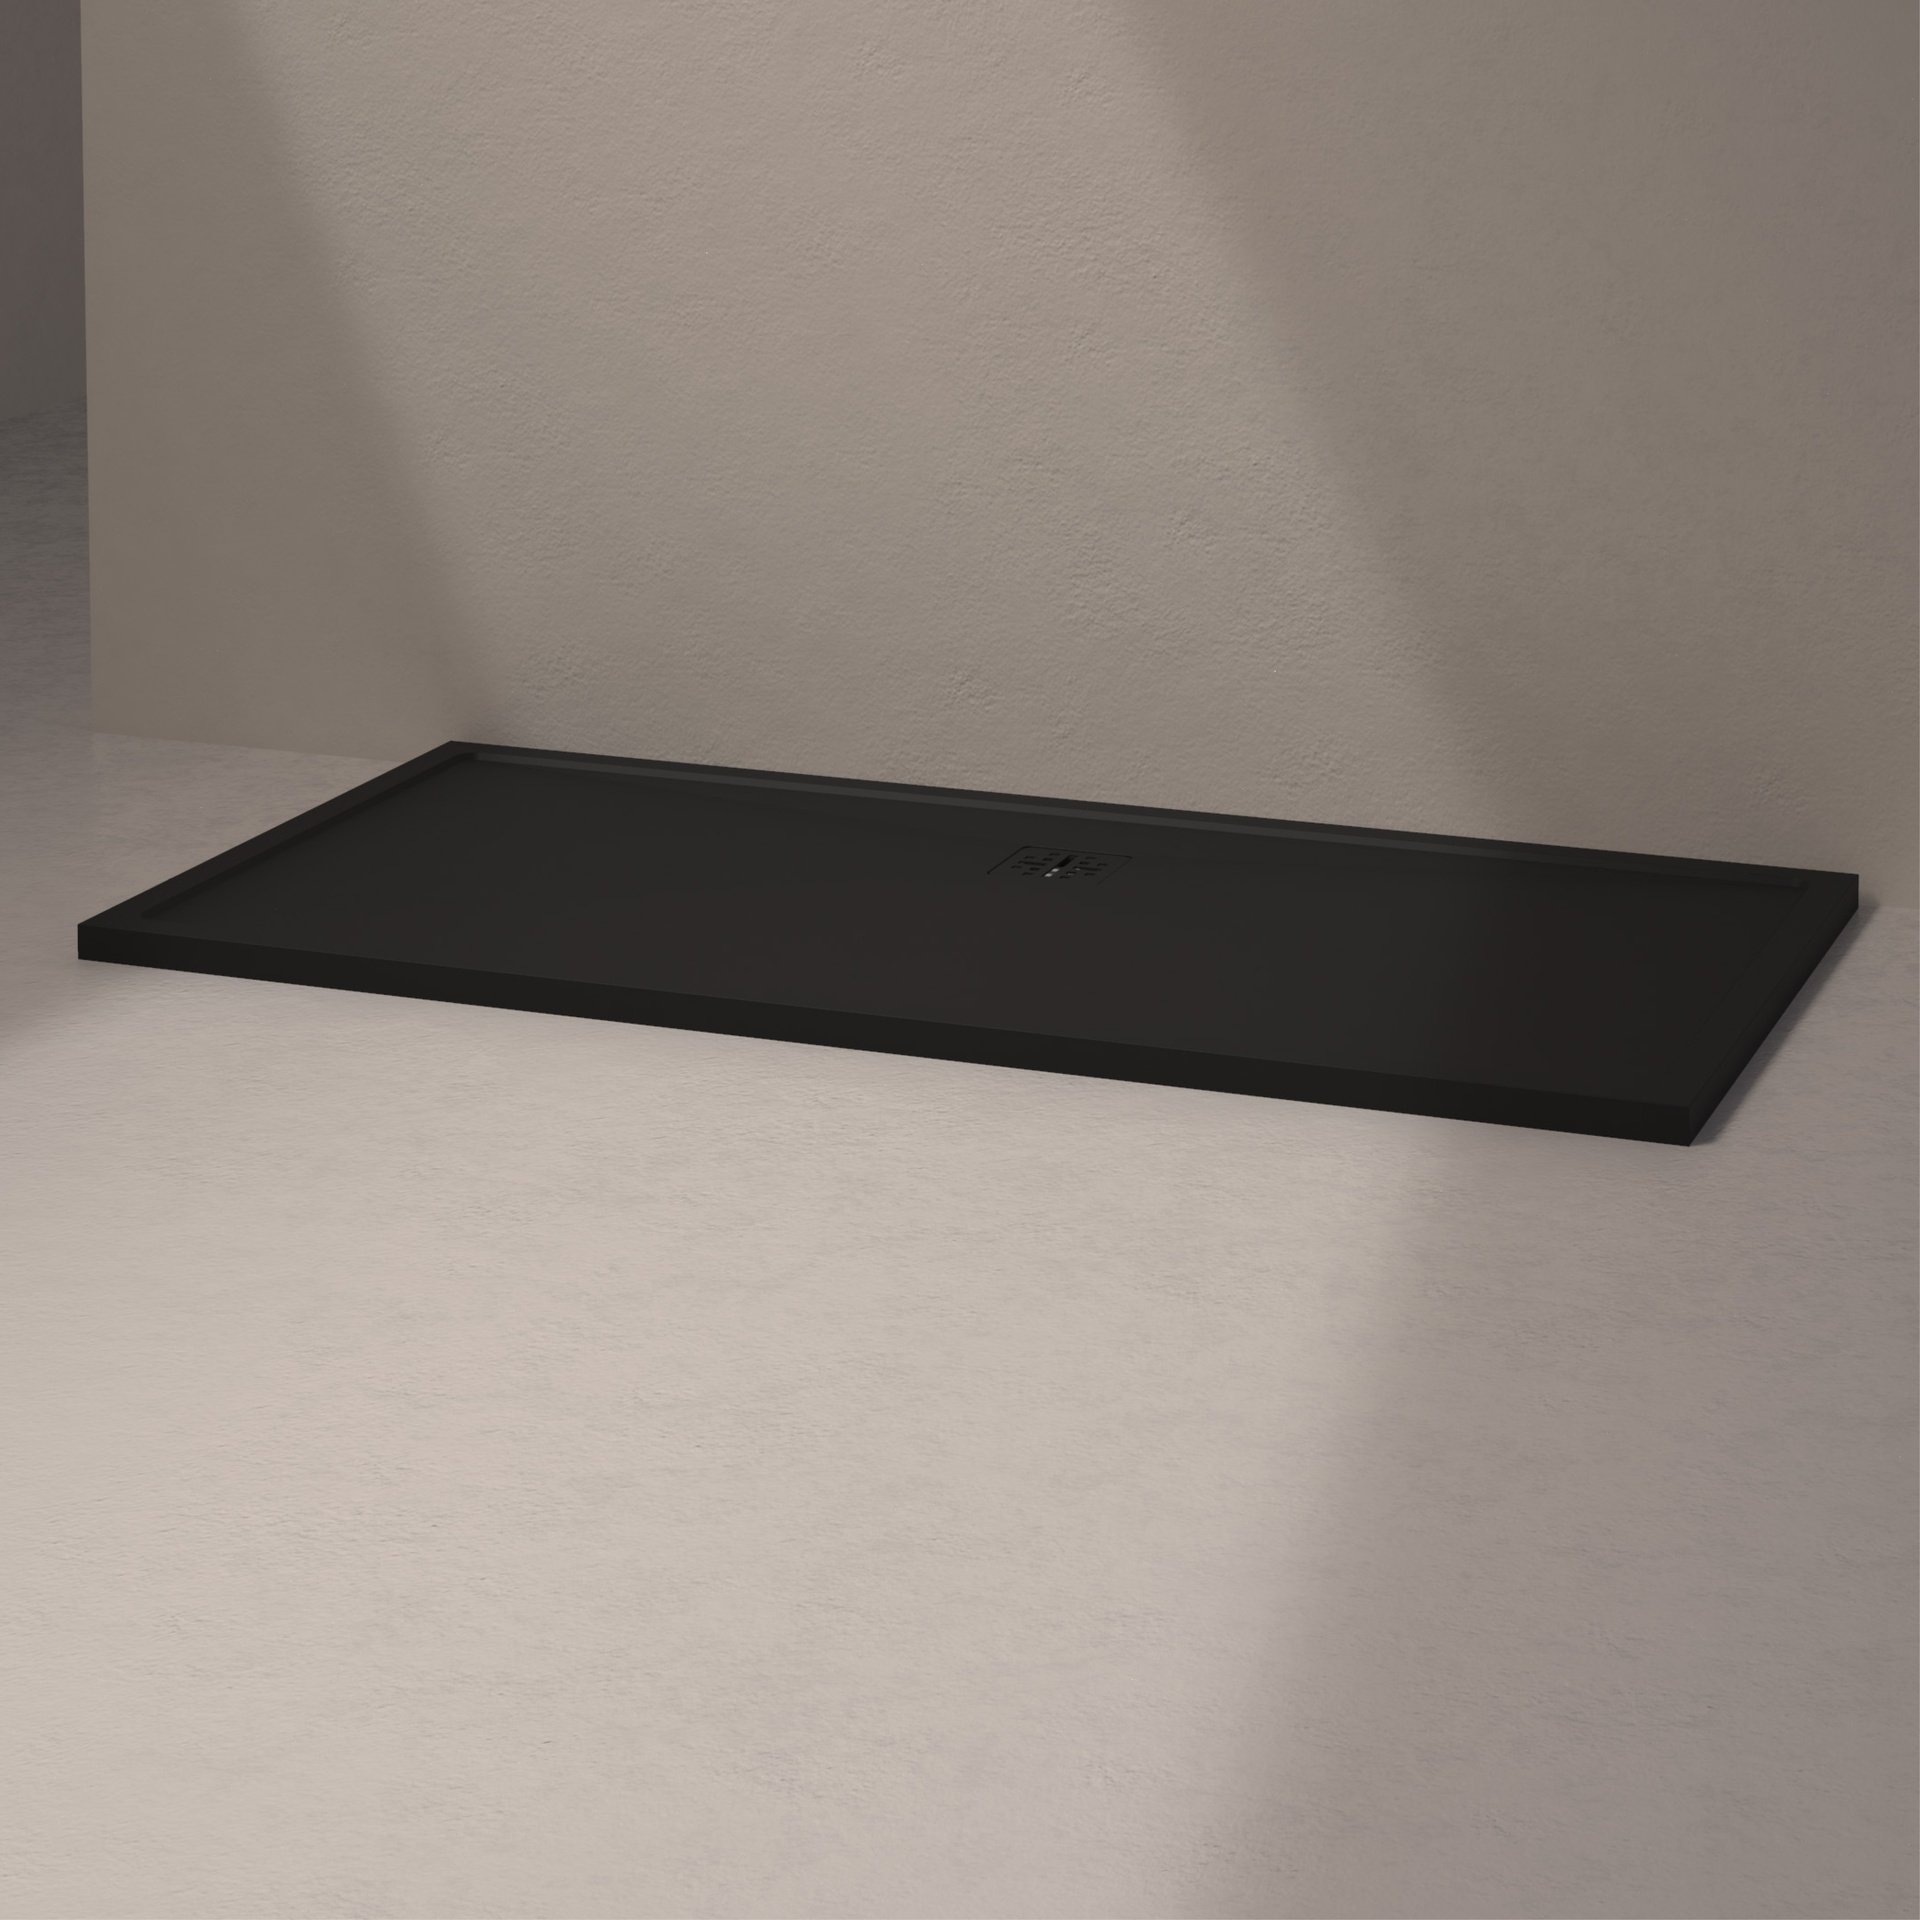 [MSTEL90180-BLACK] Mist douche vloer, lange zijde afvoer (180x90, natuursteen zwart)